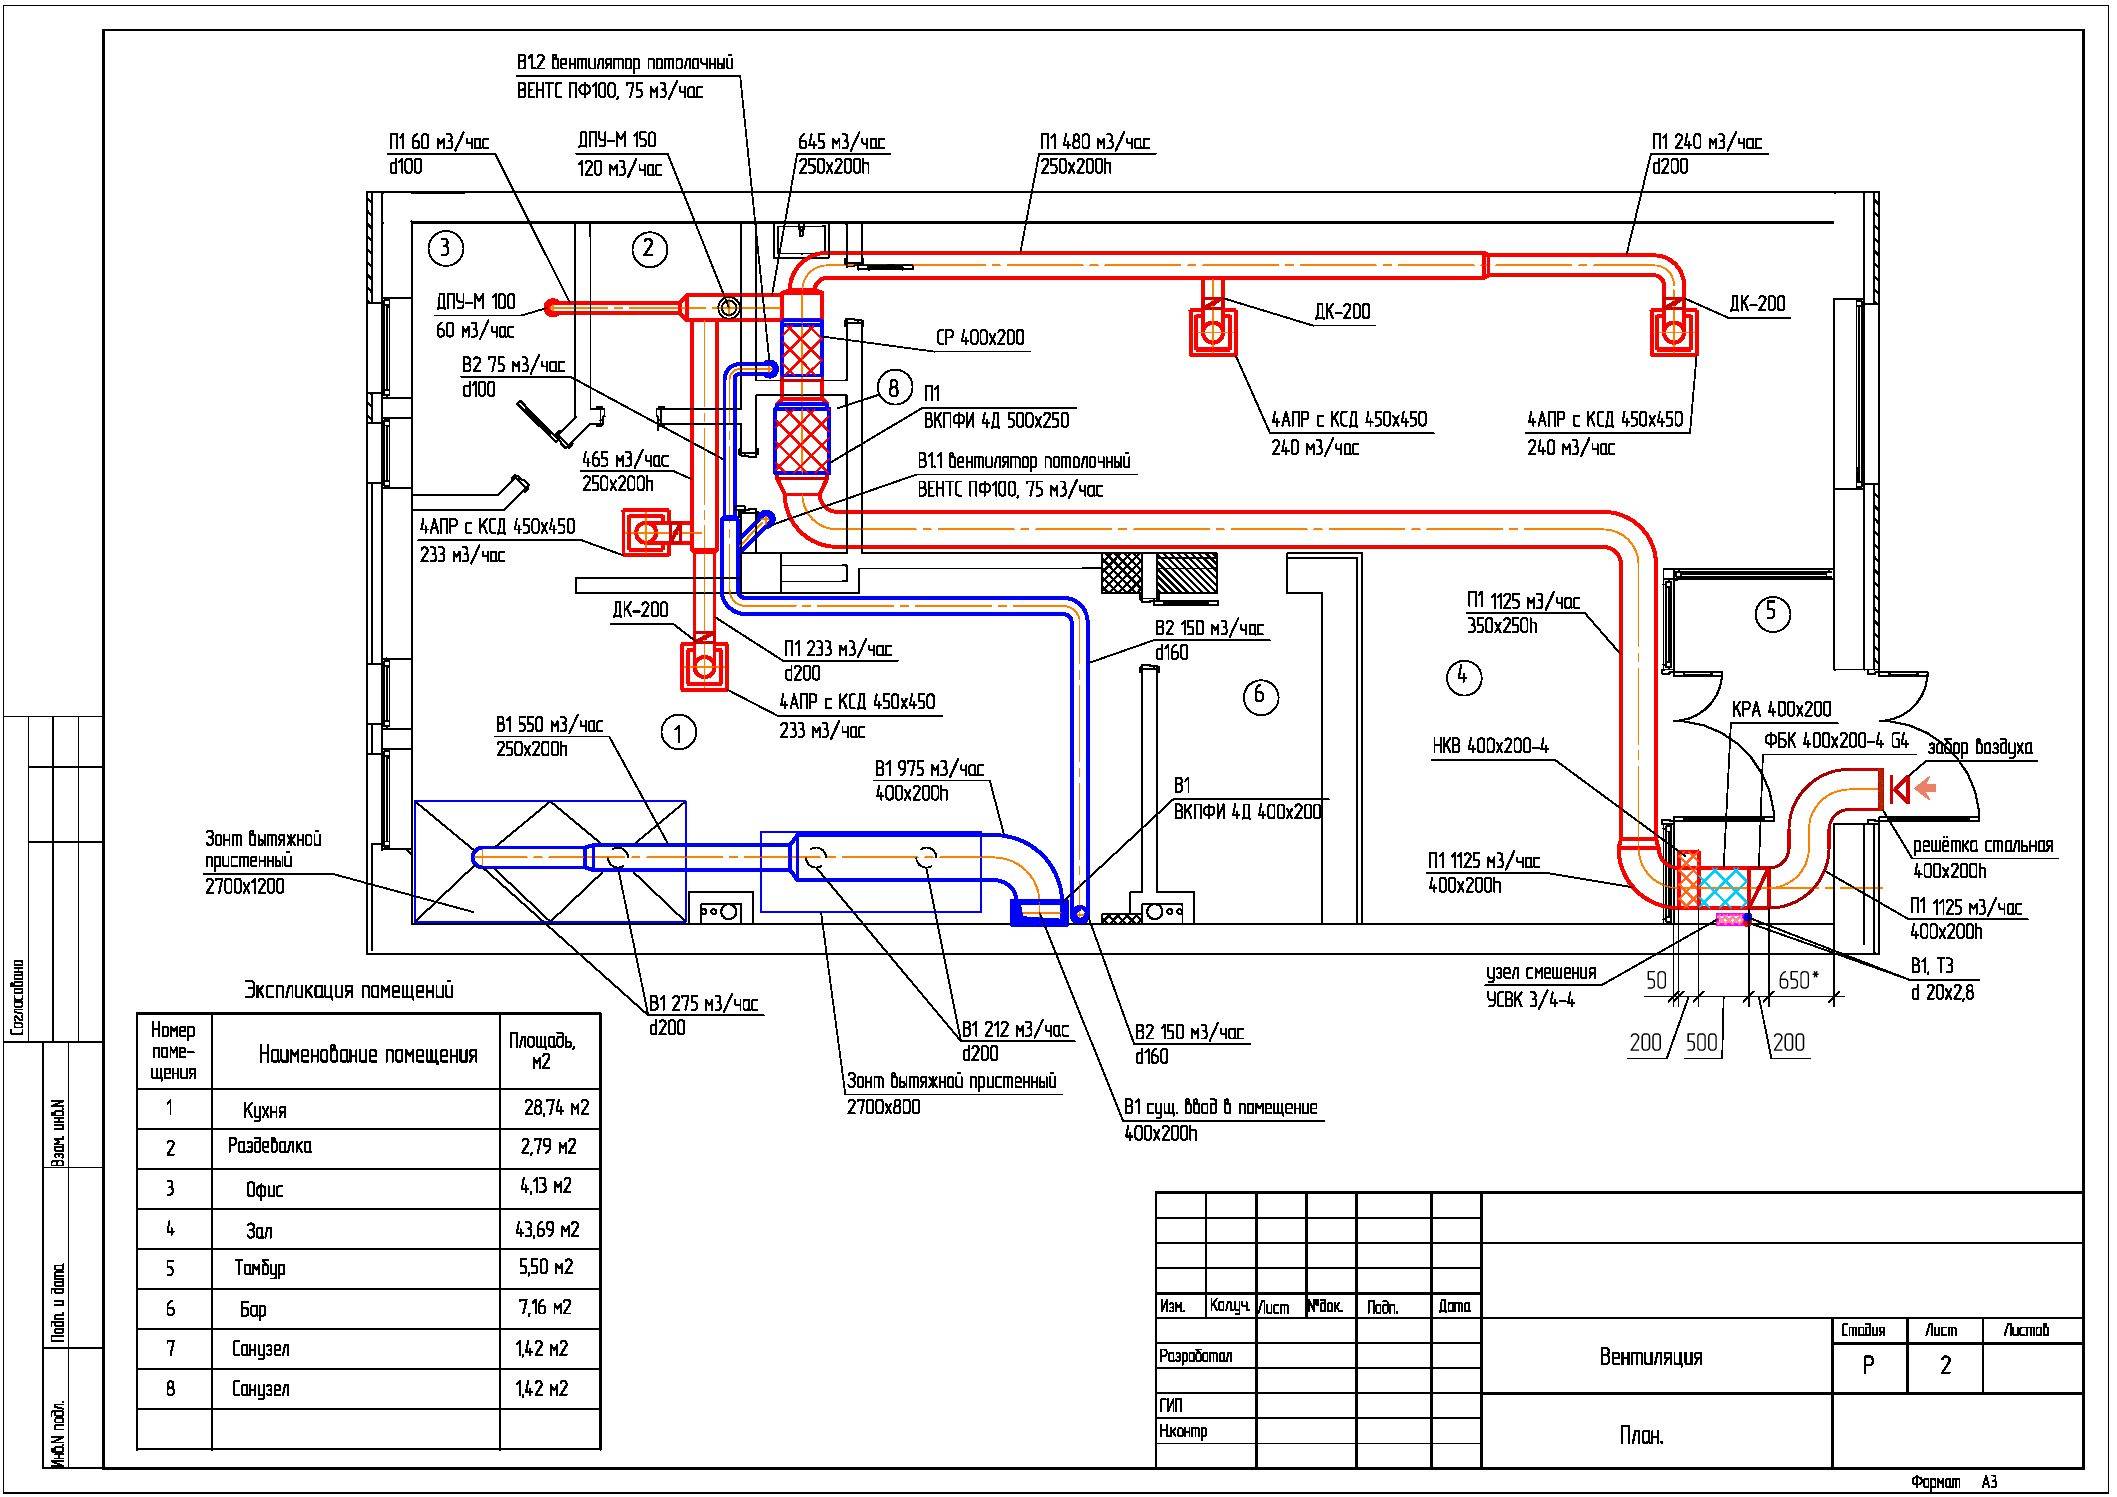 Проектирование вентиляции и кондиционирования - основные этапы